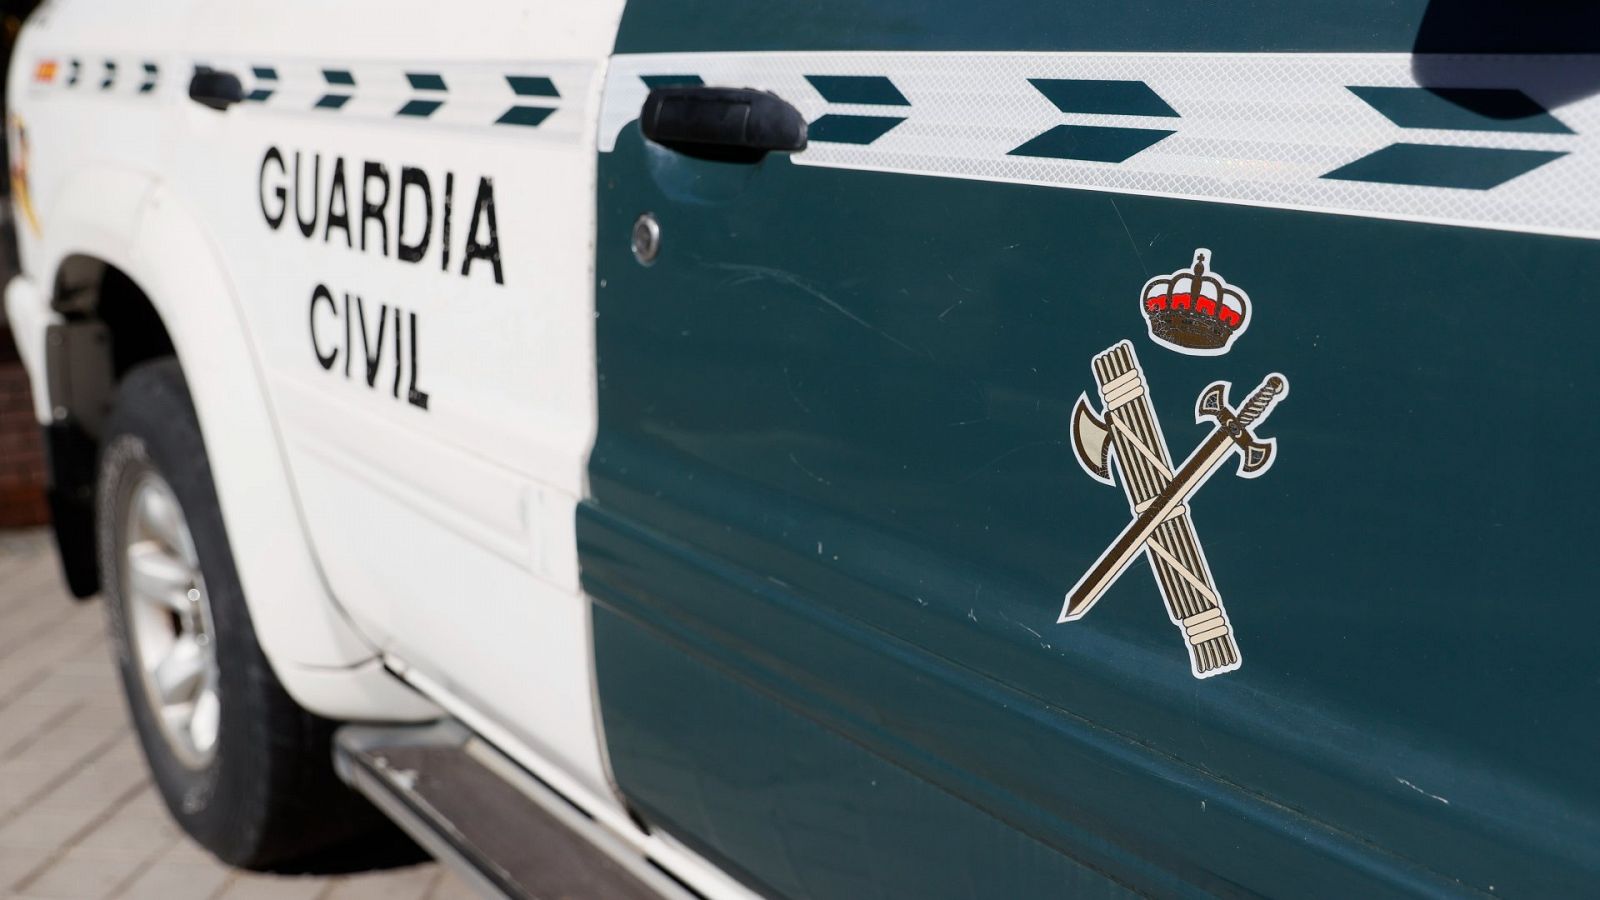 Foto de archivo de un cche de la Guardia Civil con el anagrama o identidad corporativa